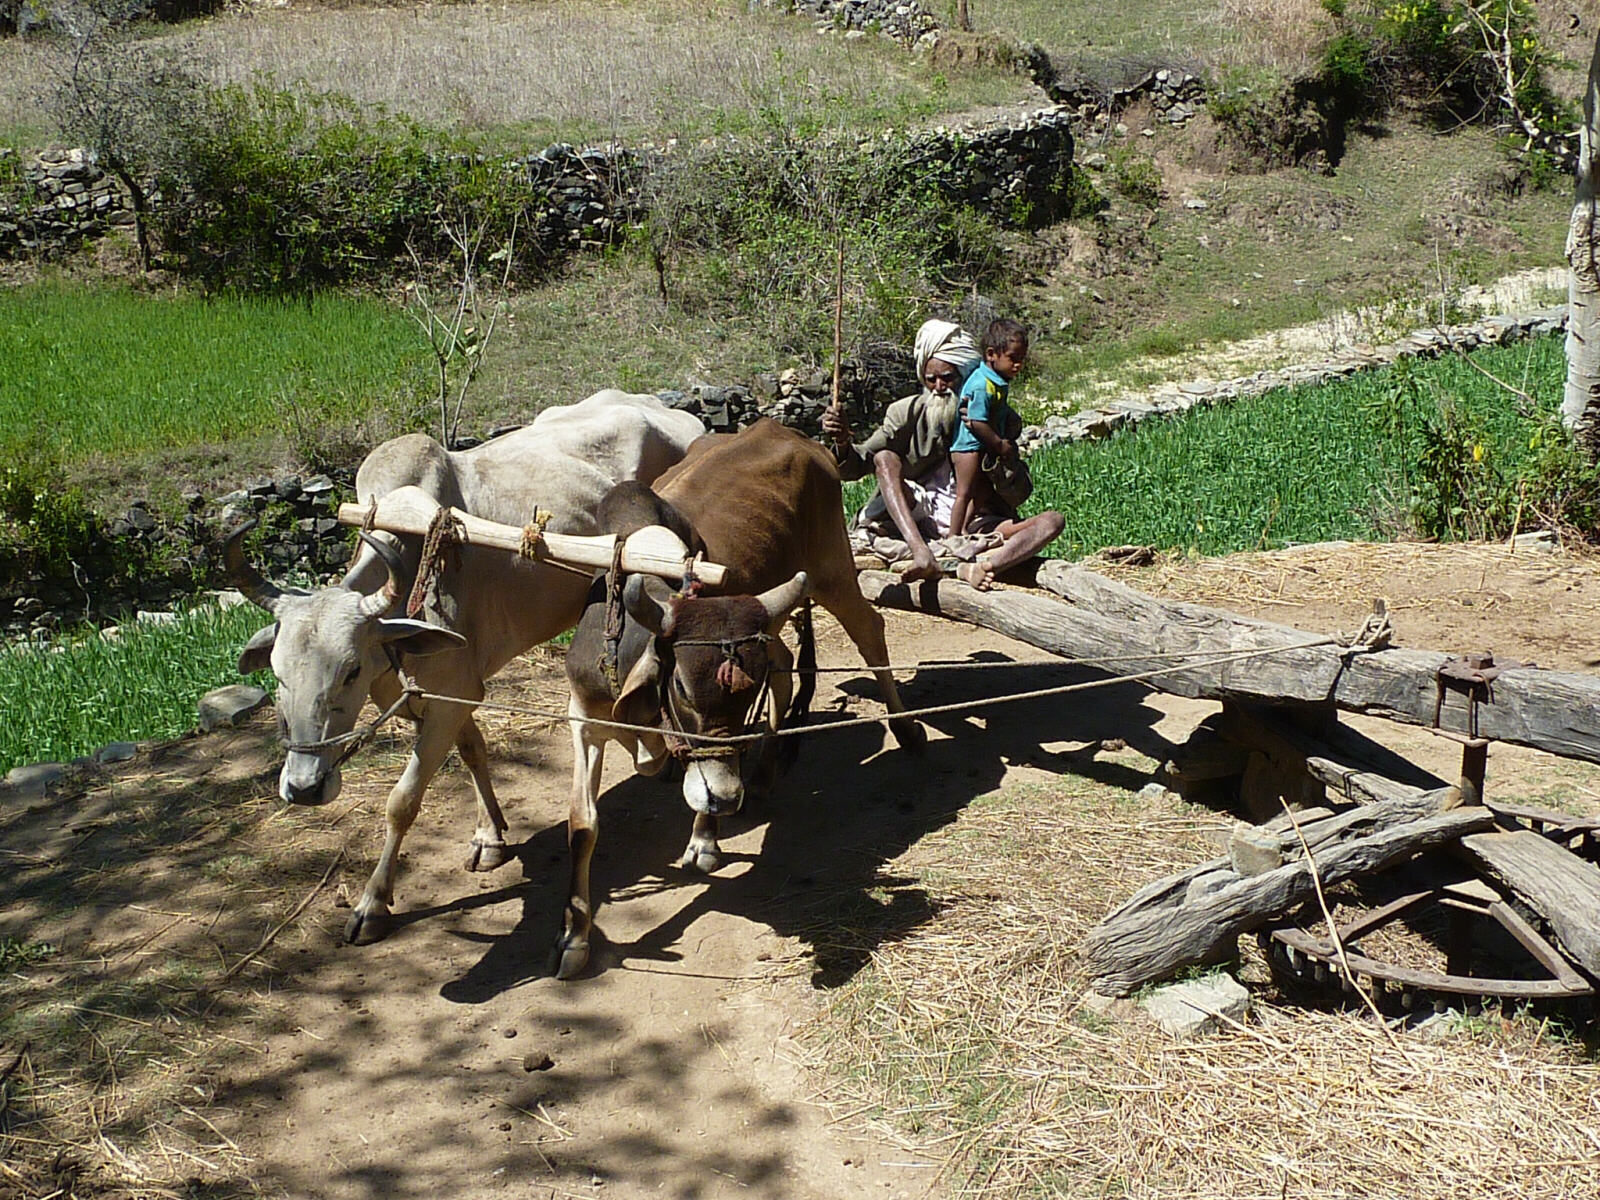 An ox-driven waterwheel near Ranakpur, Rajasthan, India